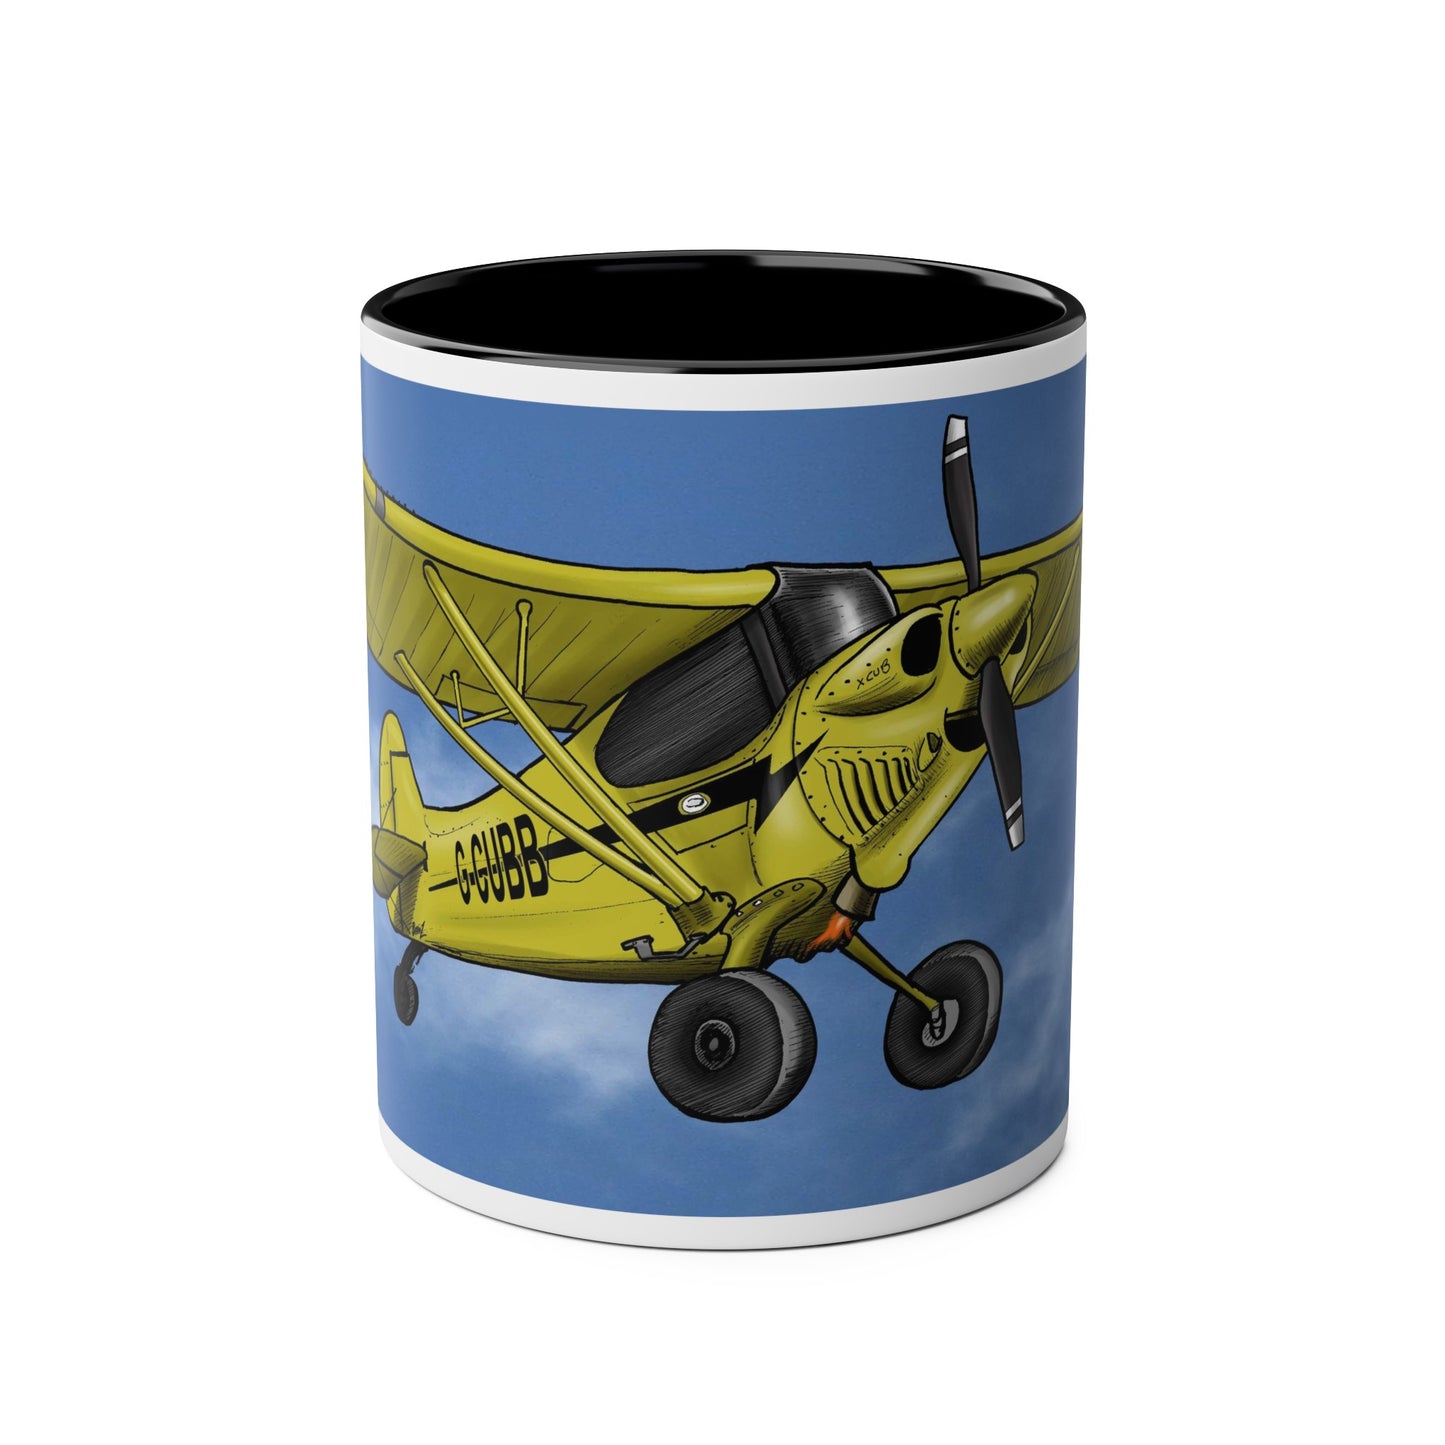 Super Yellow Cub Two-Tone Coffee Mugs, 11oz